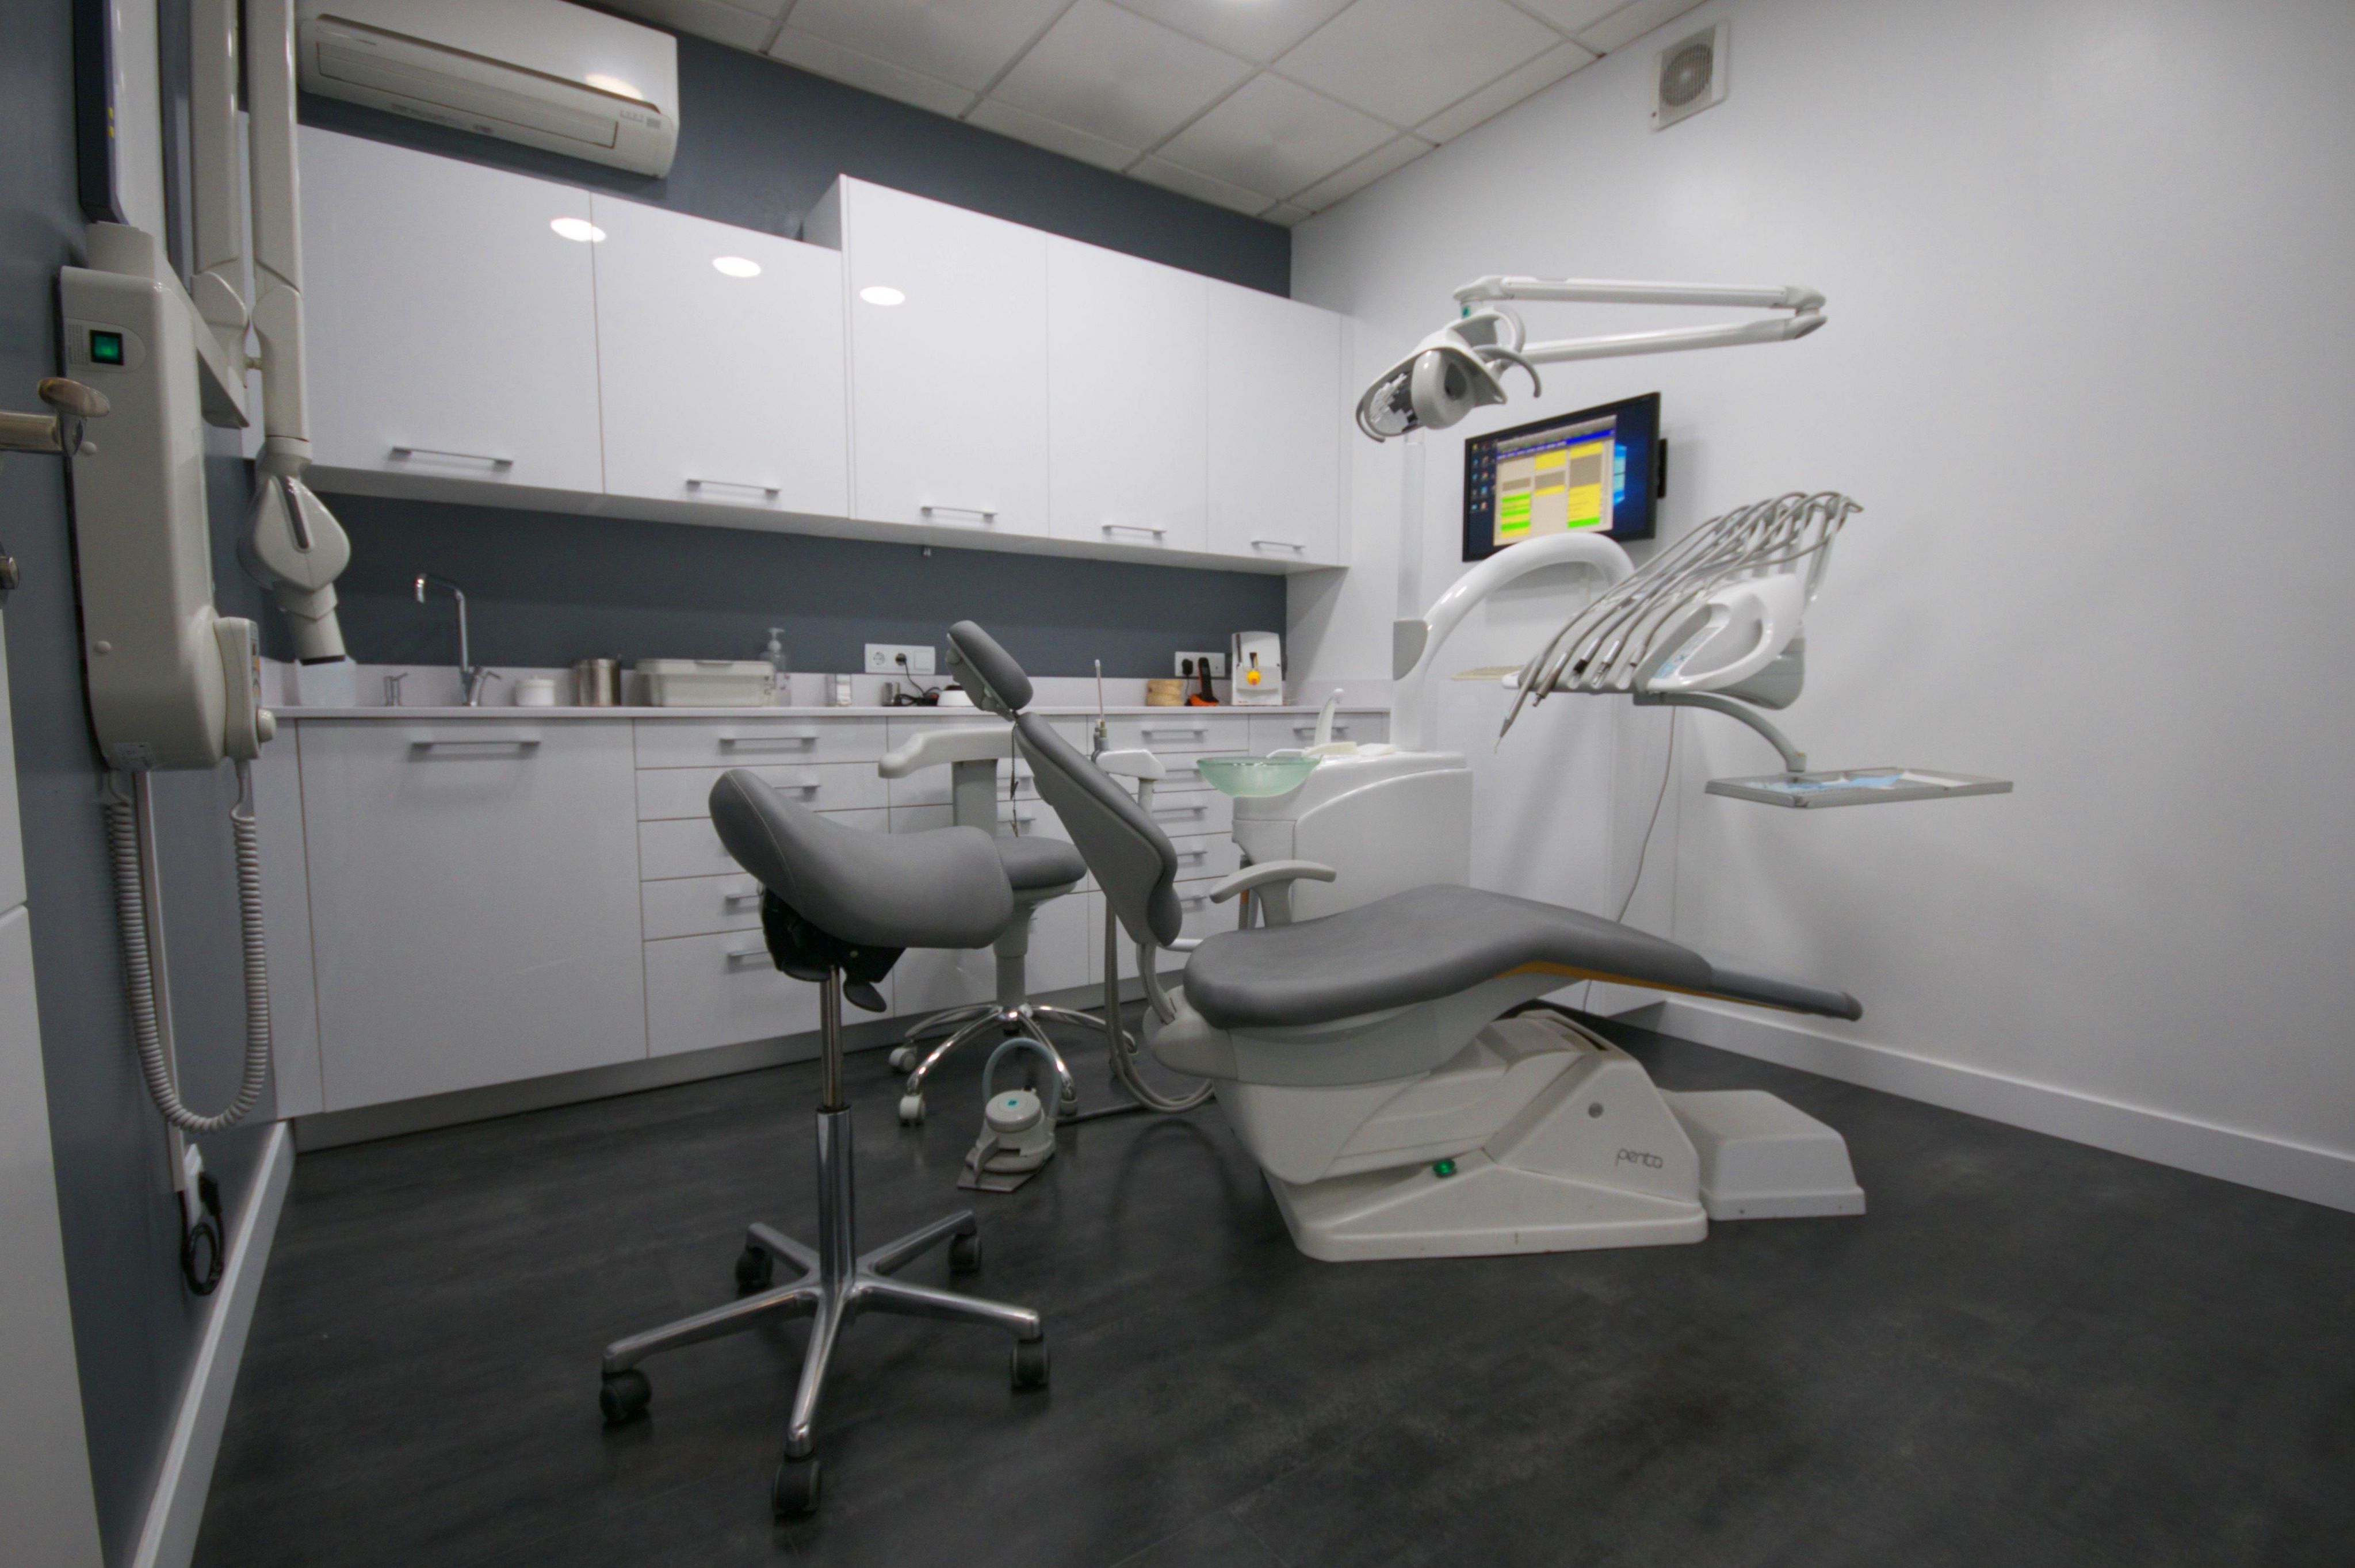 Foto 13 de Clínicas dentales en Madrid | Clínica Dental Morey